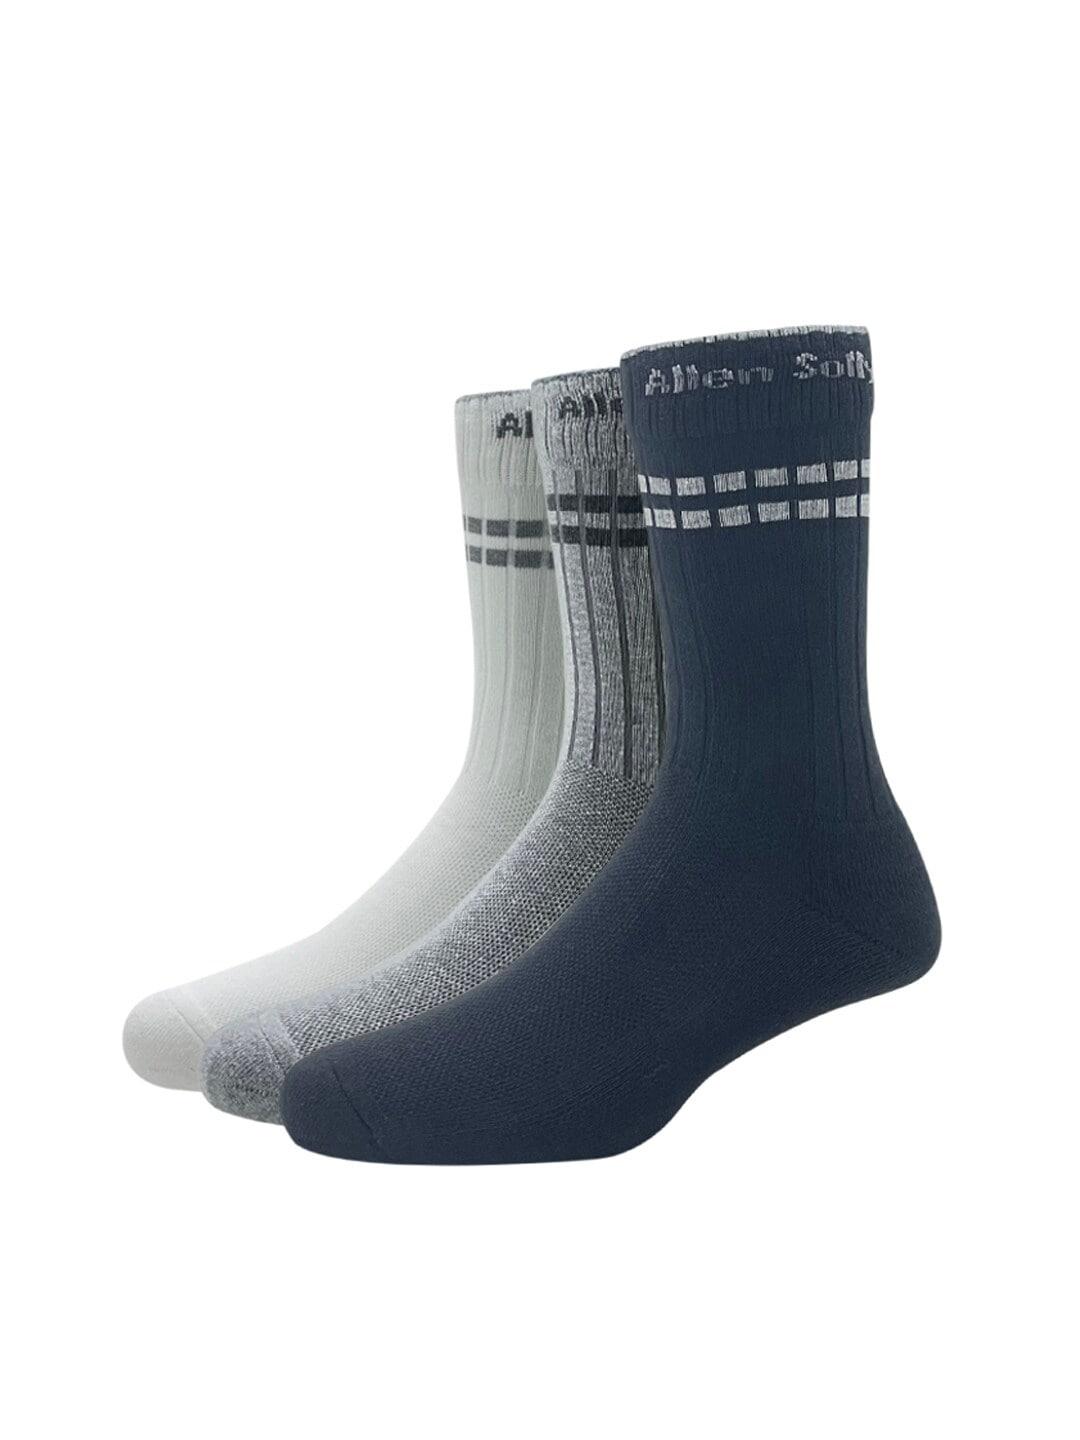 allen-solly-men-pack-of-3-patterned-calf-length-socks